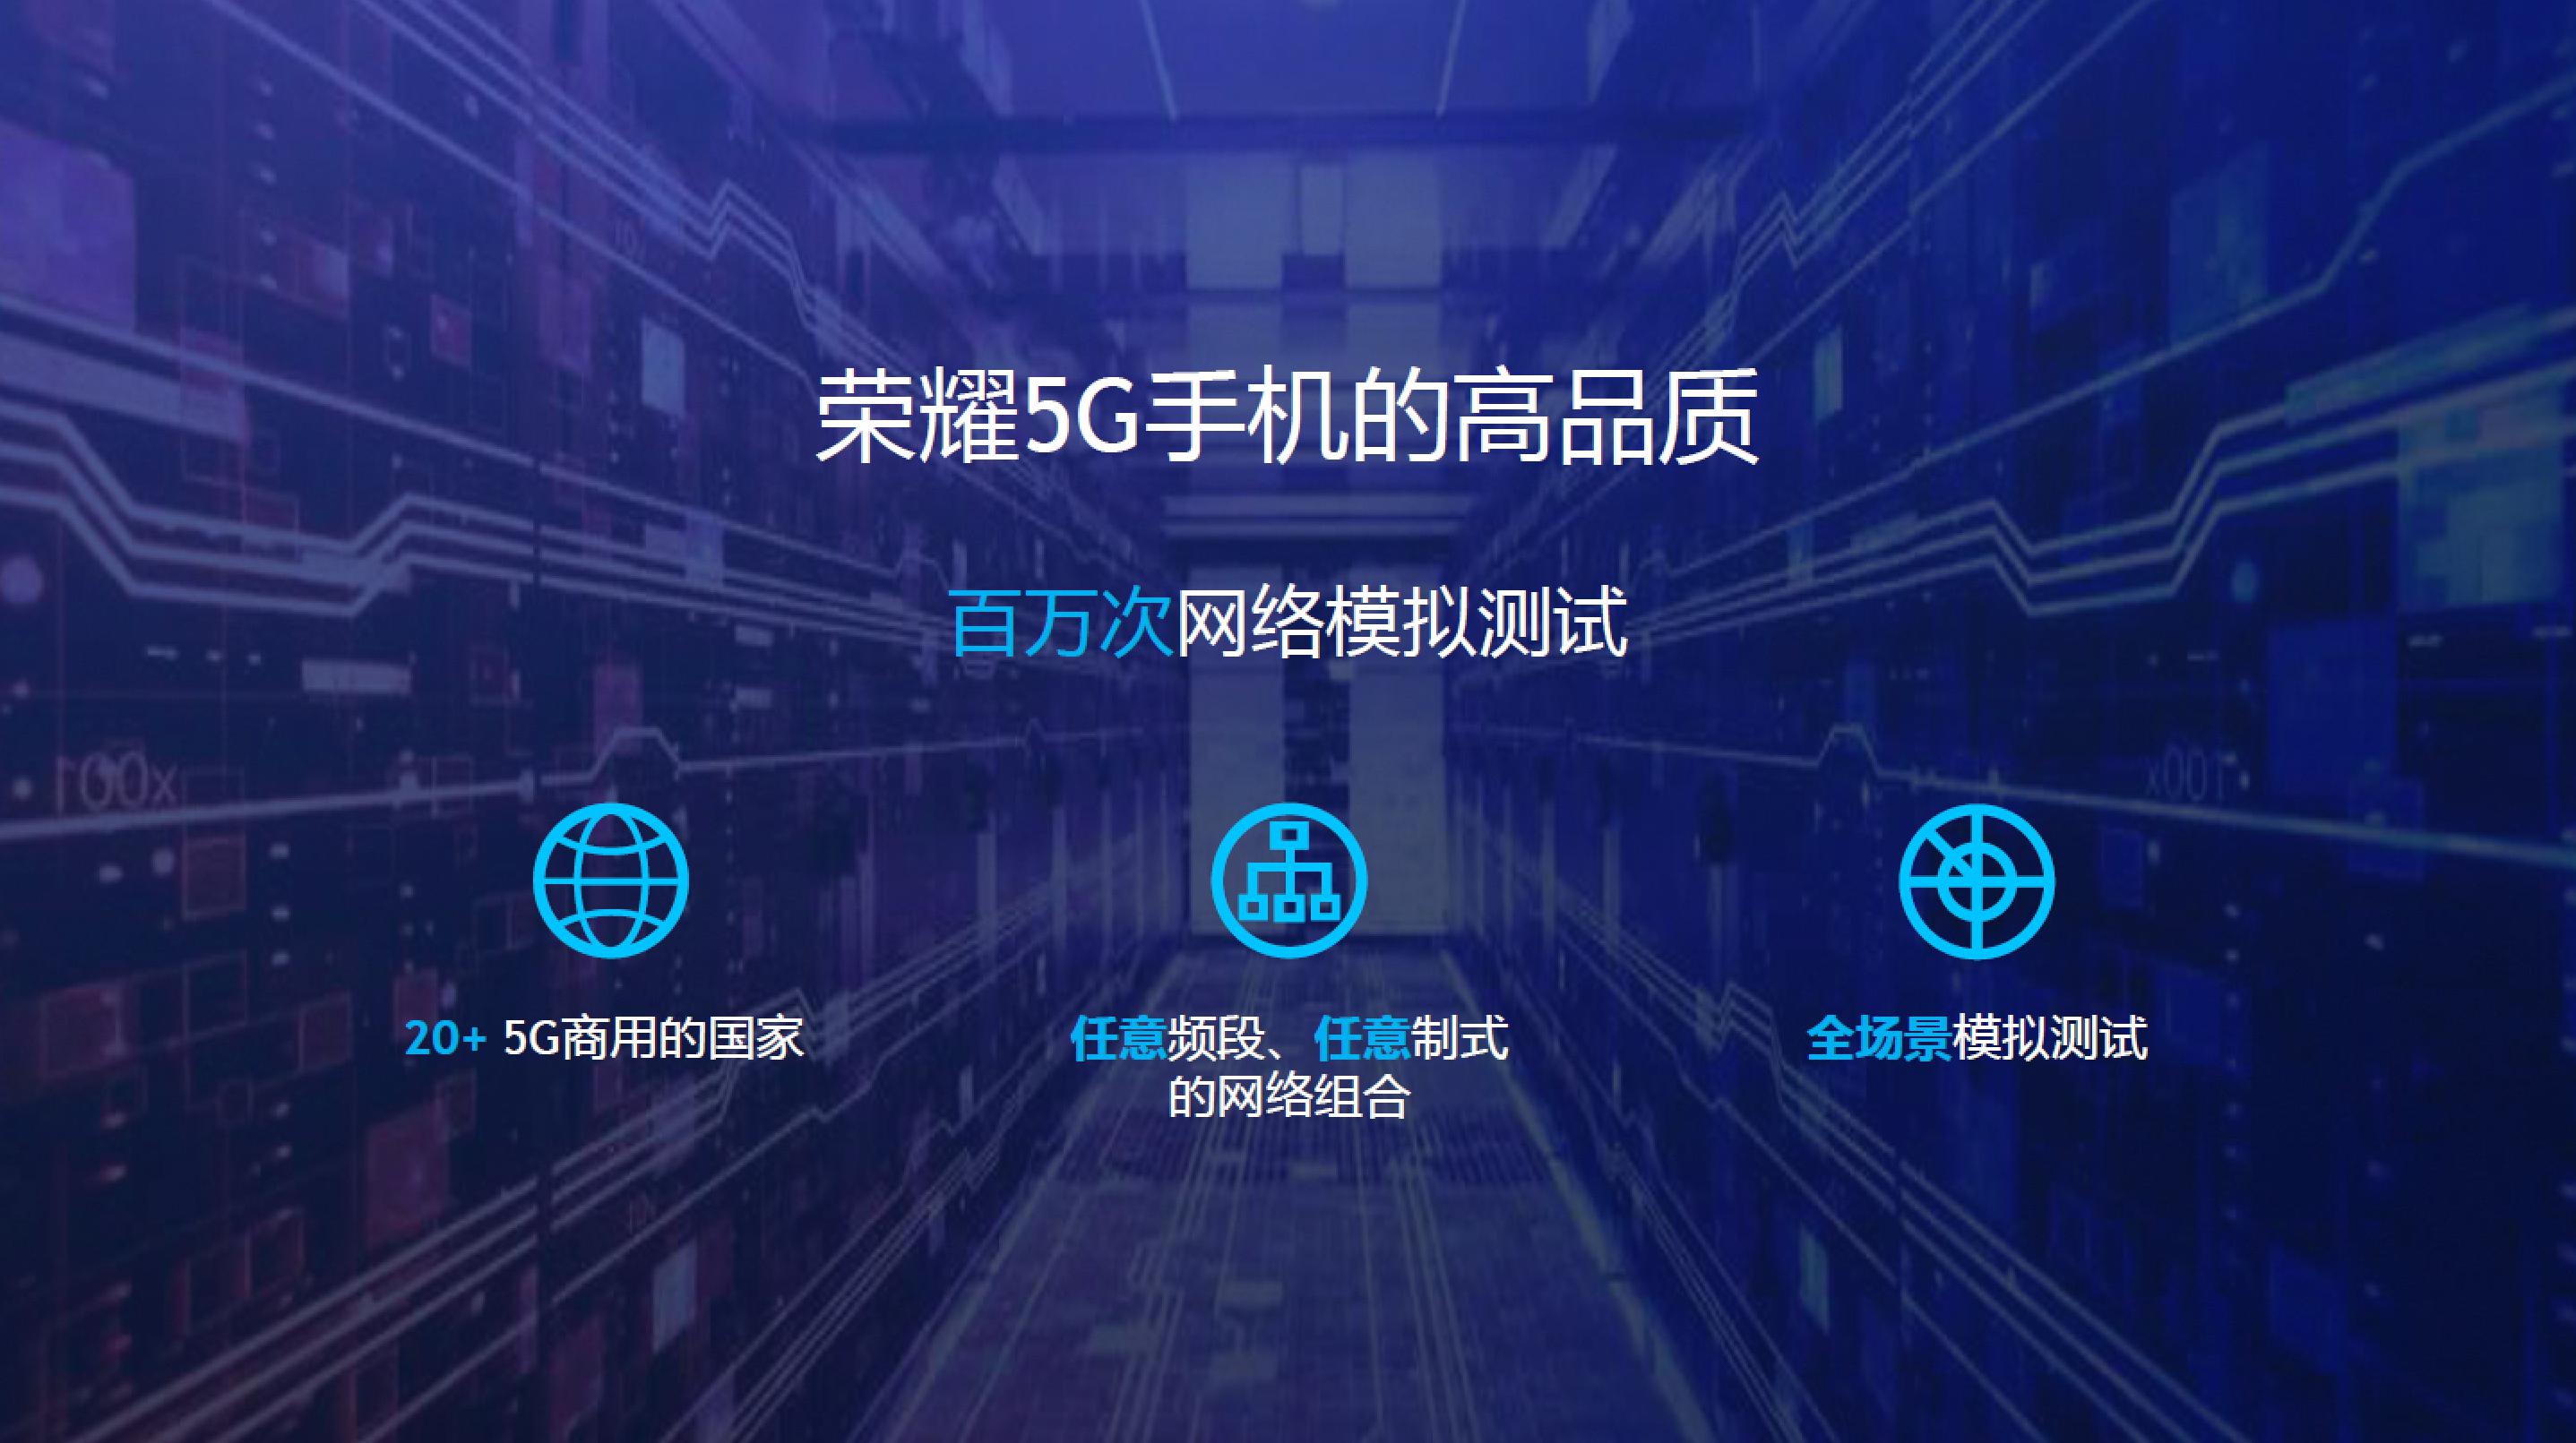 荣耀首度揭秘领先5G技术Vera30开创5G新纪元